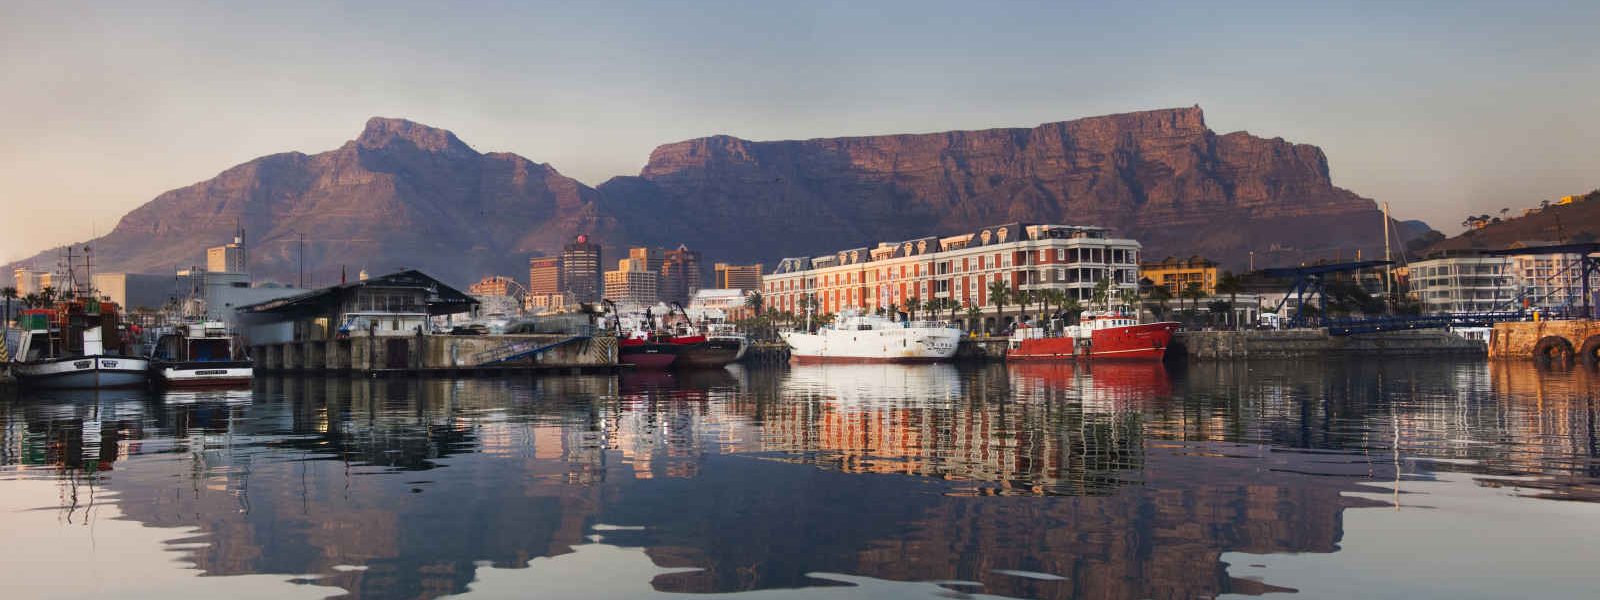 Le Waterfront et la montagne de la Table, Le Cap, Afrique du Sud